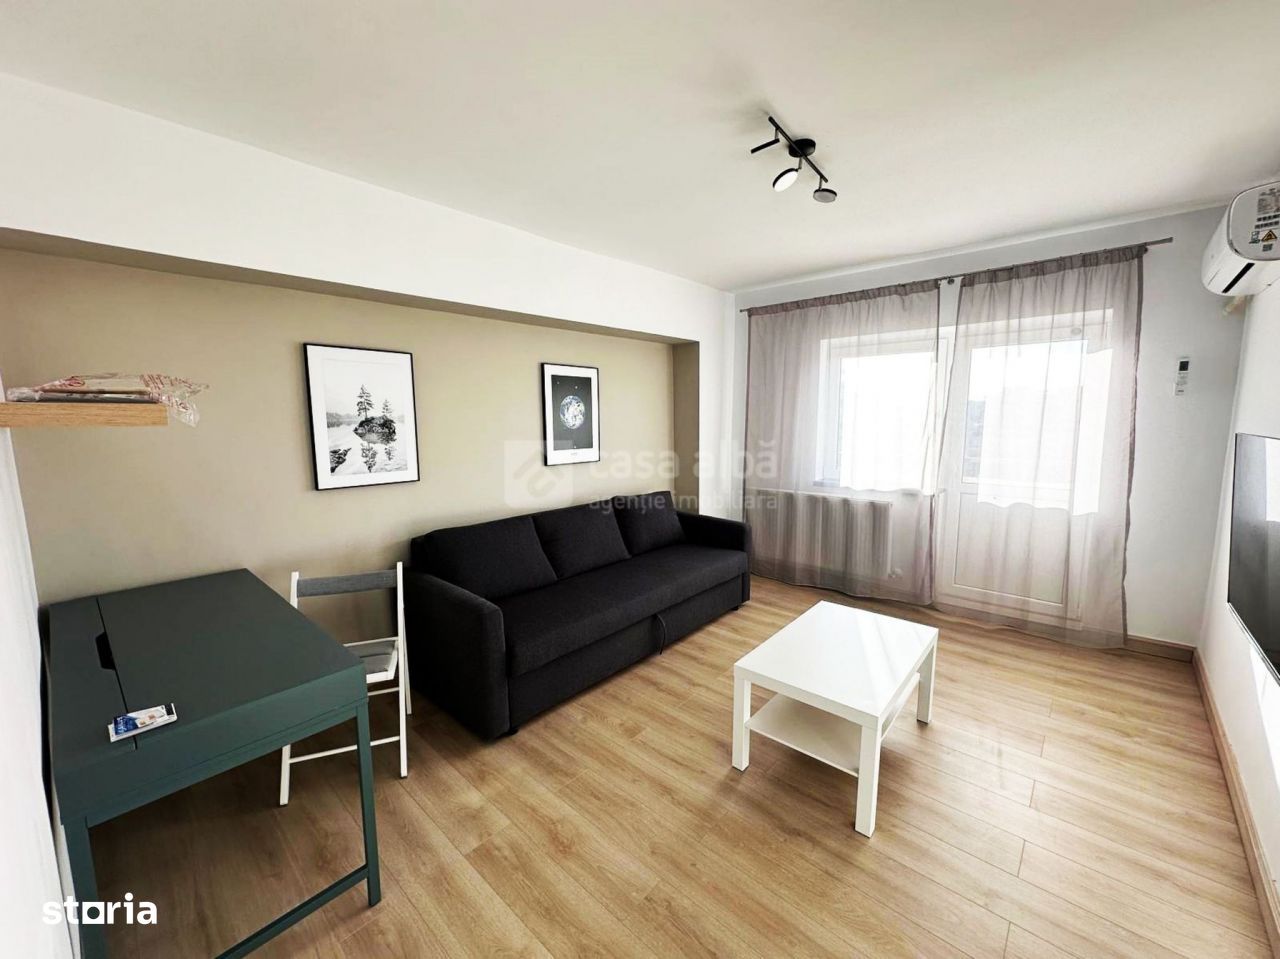 Gara - Arcu, apartament cu 2 camere mobilat si utilat nou